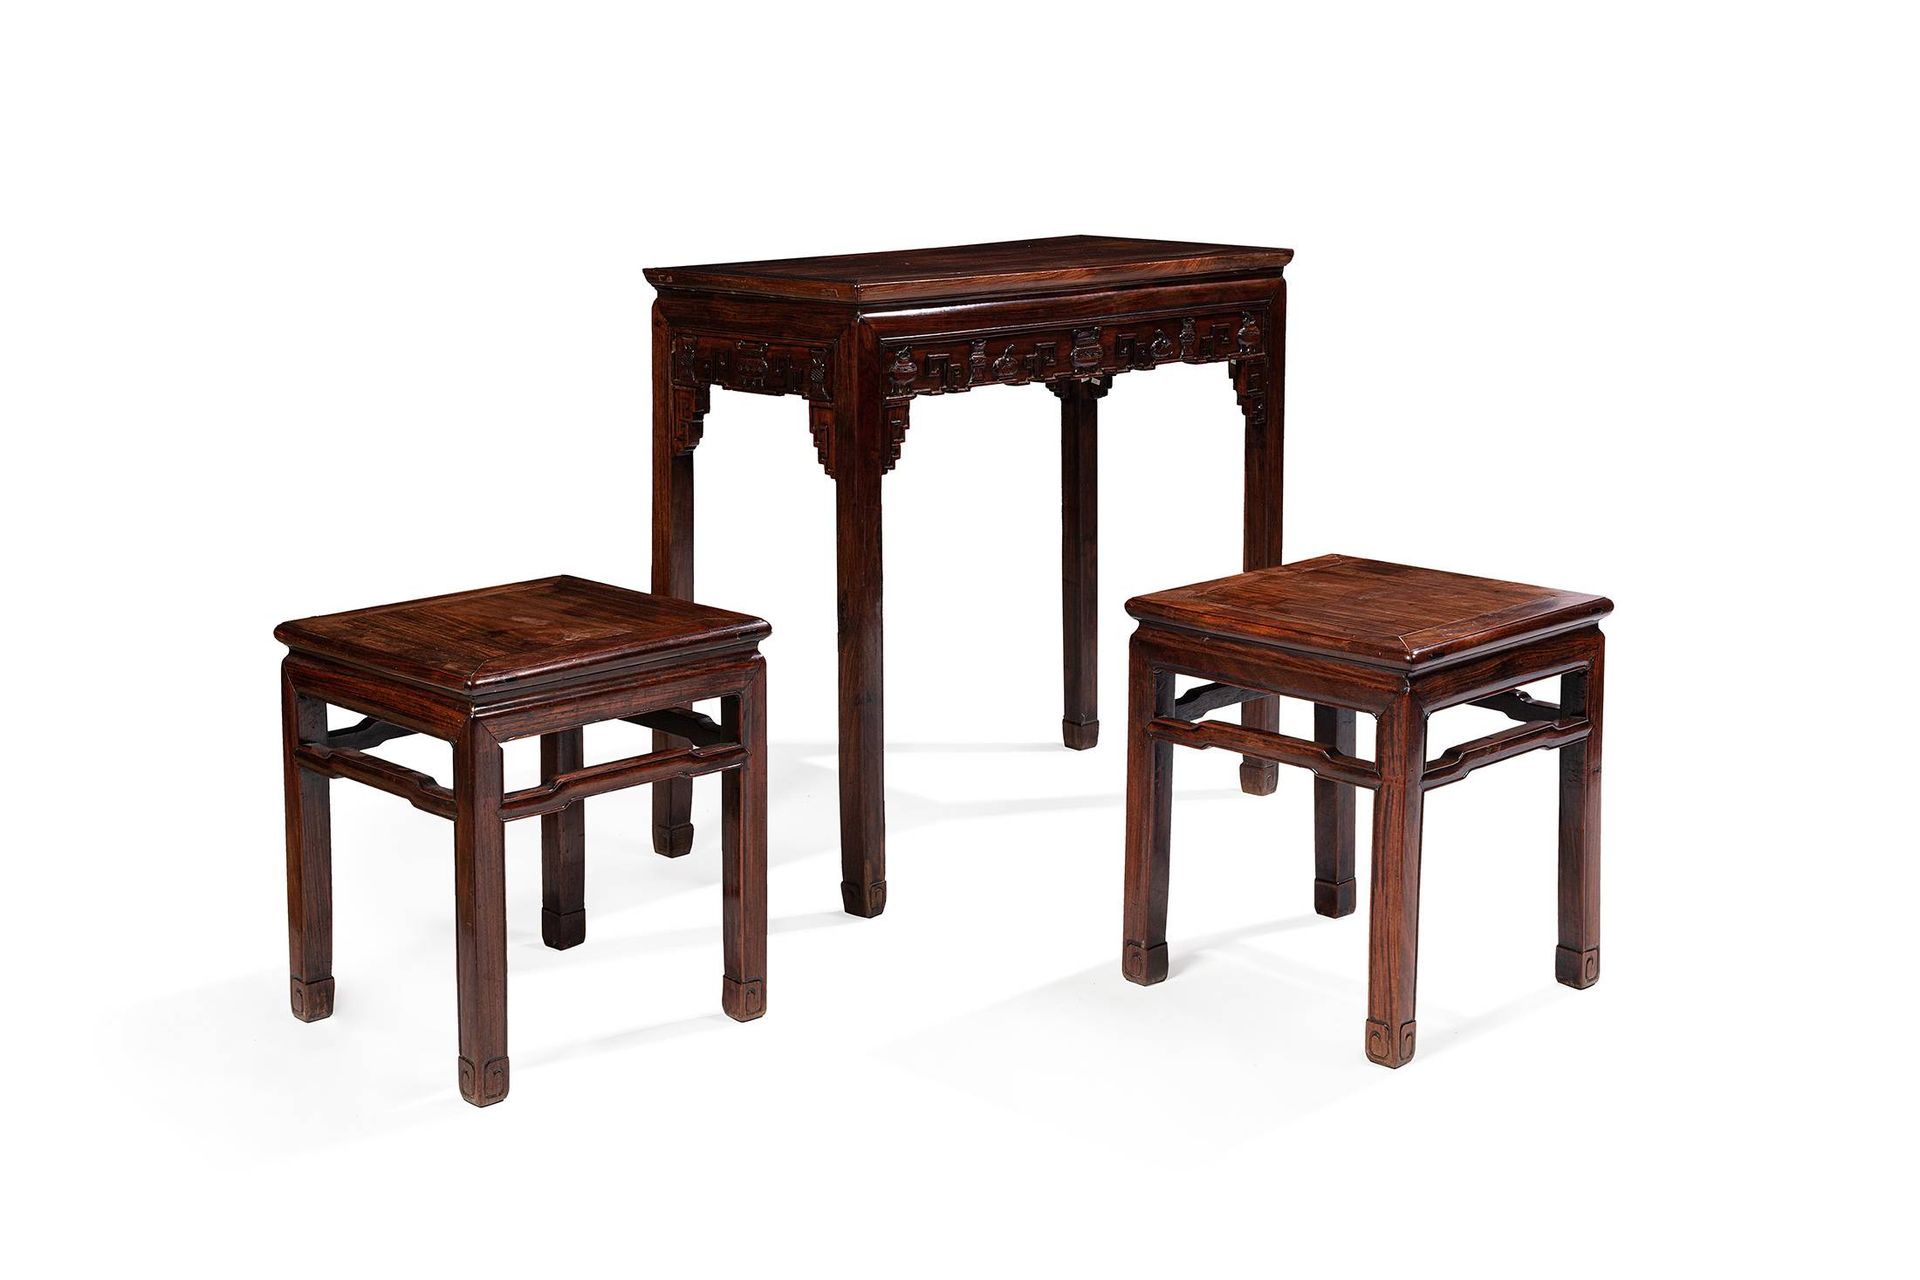 CHINE, XIXe siècle 
红木雕刻的桌子和两个凳子

凳子：50 x 44 x 44厘米





桌子：87 x 91 x 46 厘米